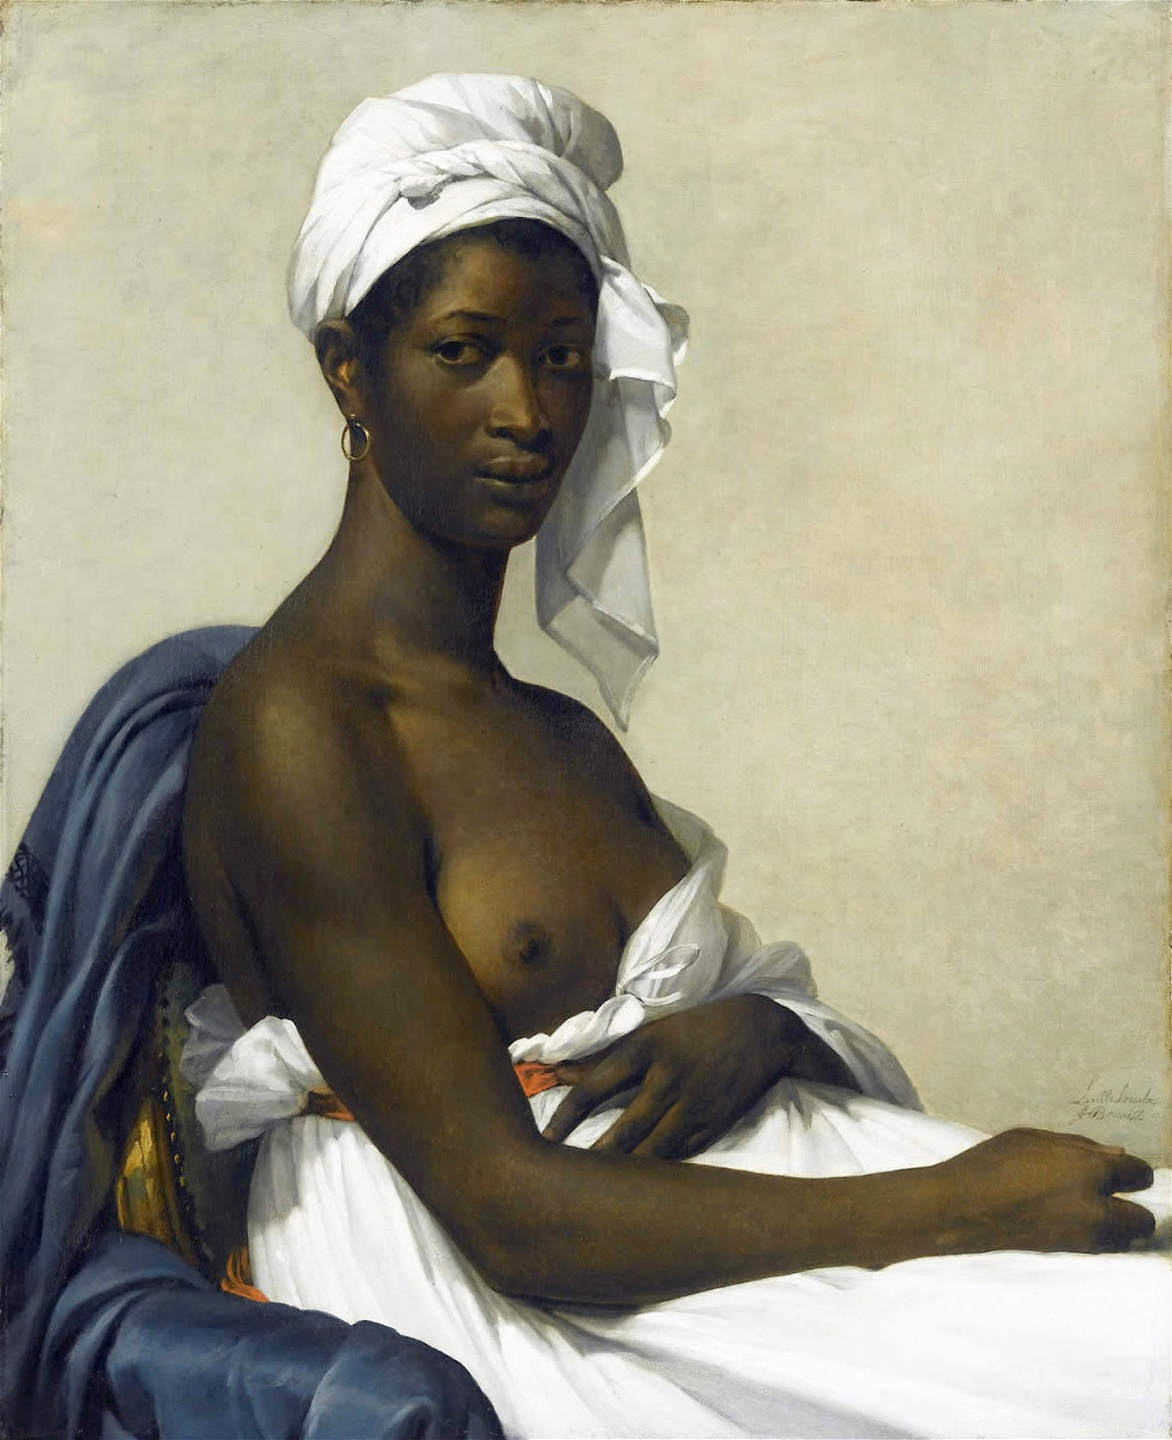 Marie-Guillemine Benoists ”Porträtt av Madeleine” må vara ett nästan övertydligt exempel: den vita kvinnan med penseln i hand som skapar sig en plats i den manliga konstvärlden med den svarta kvinnans blottade kropp som medel.